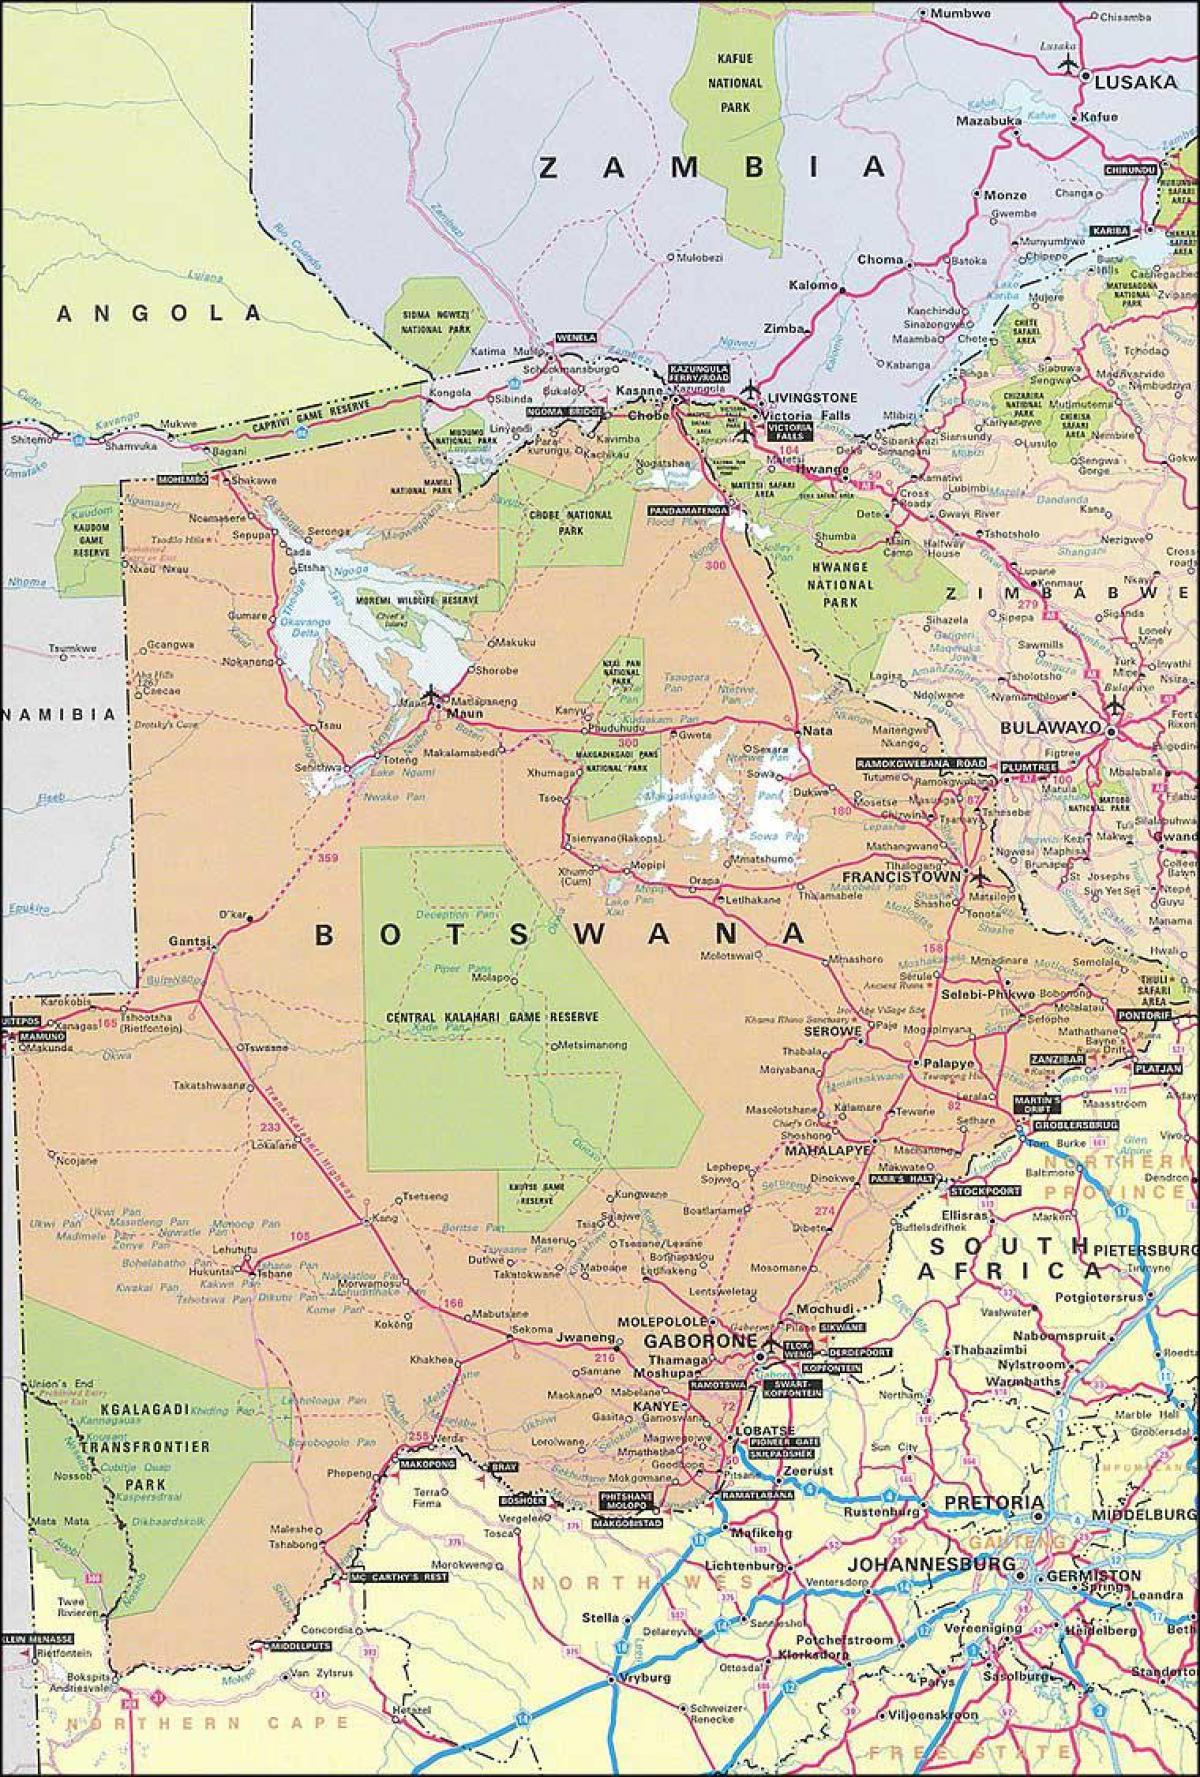 harta detaliată hartă rutieră a Botswana